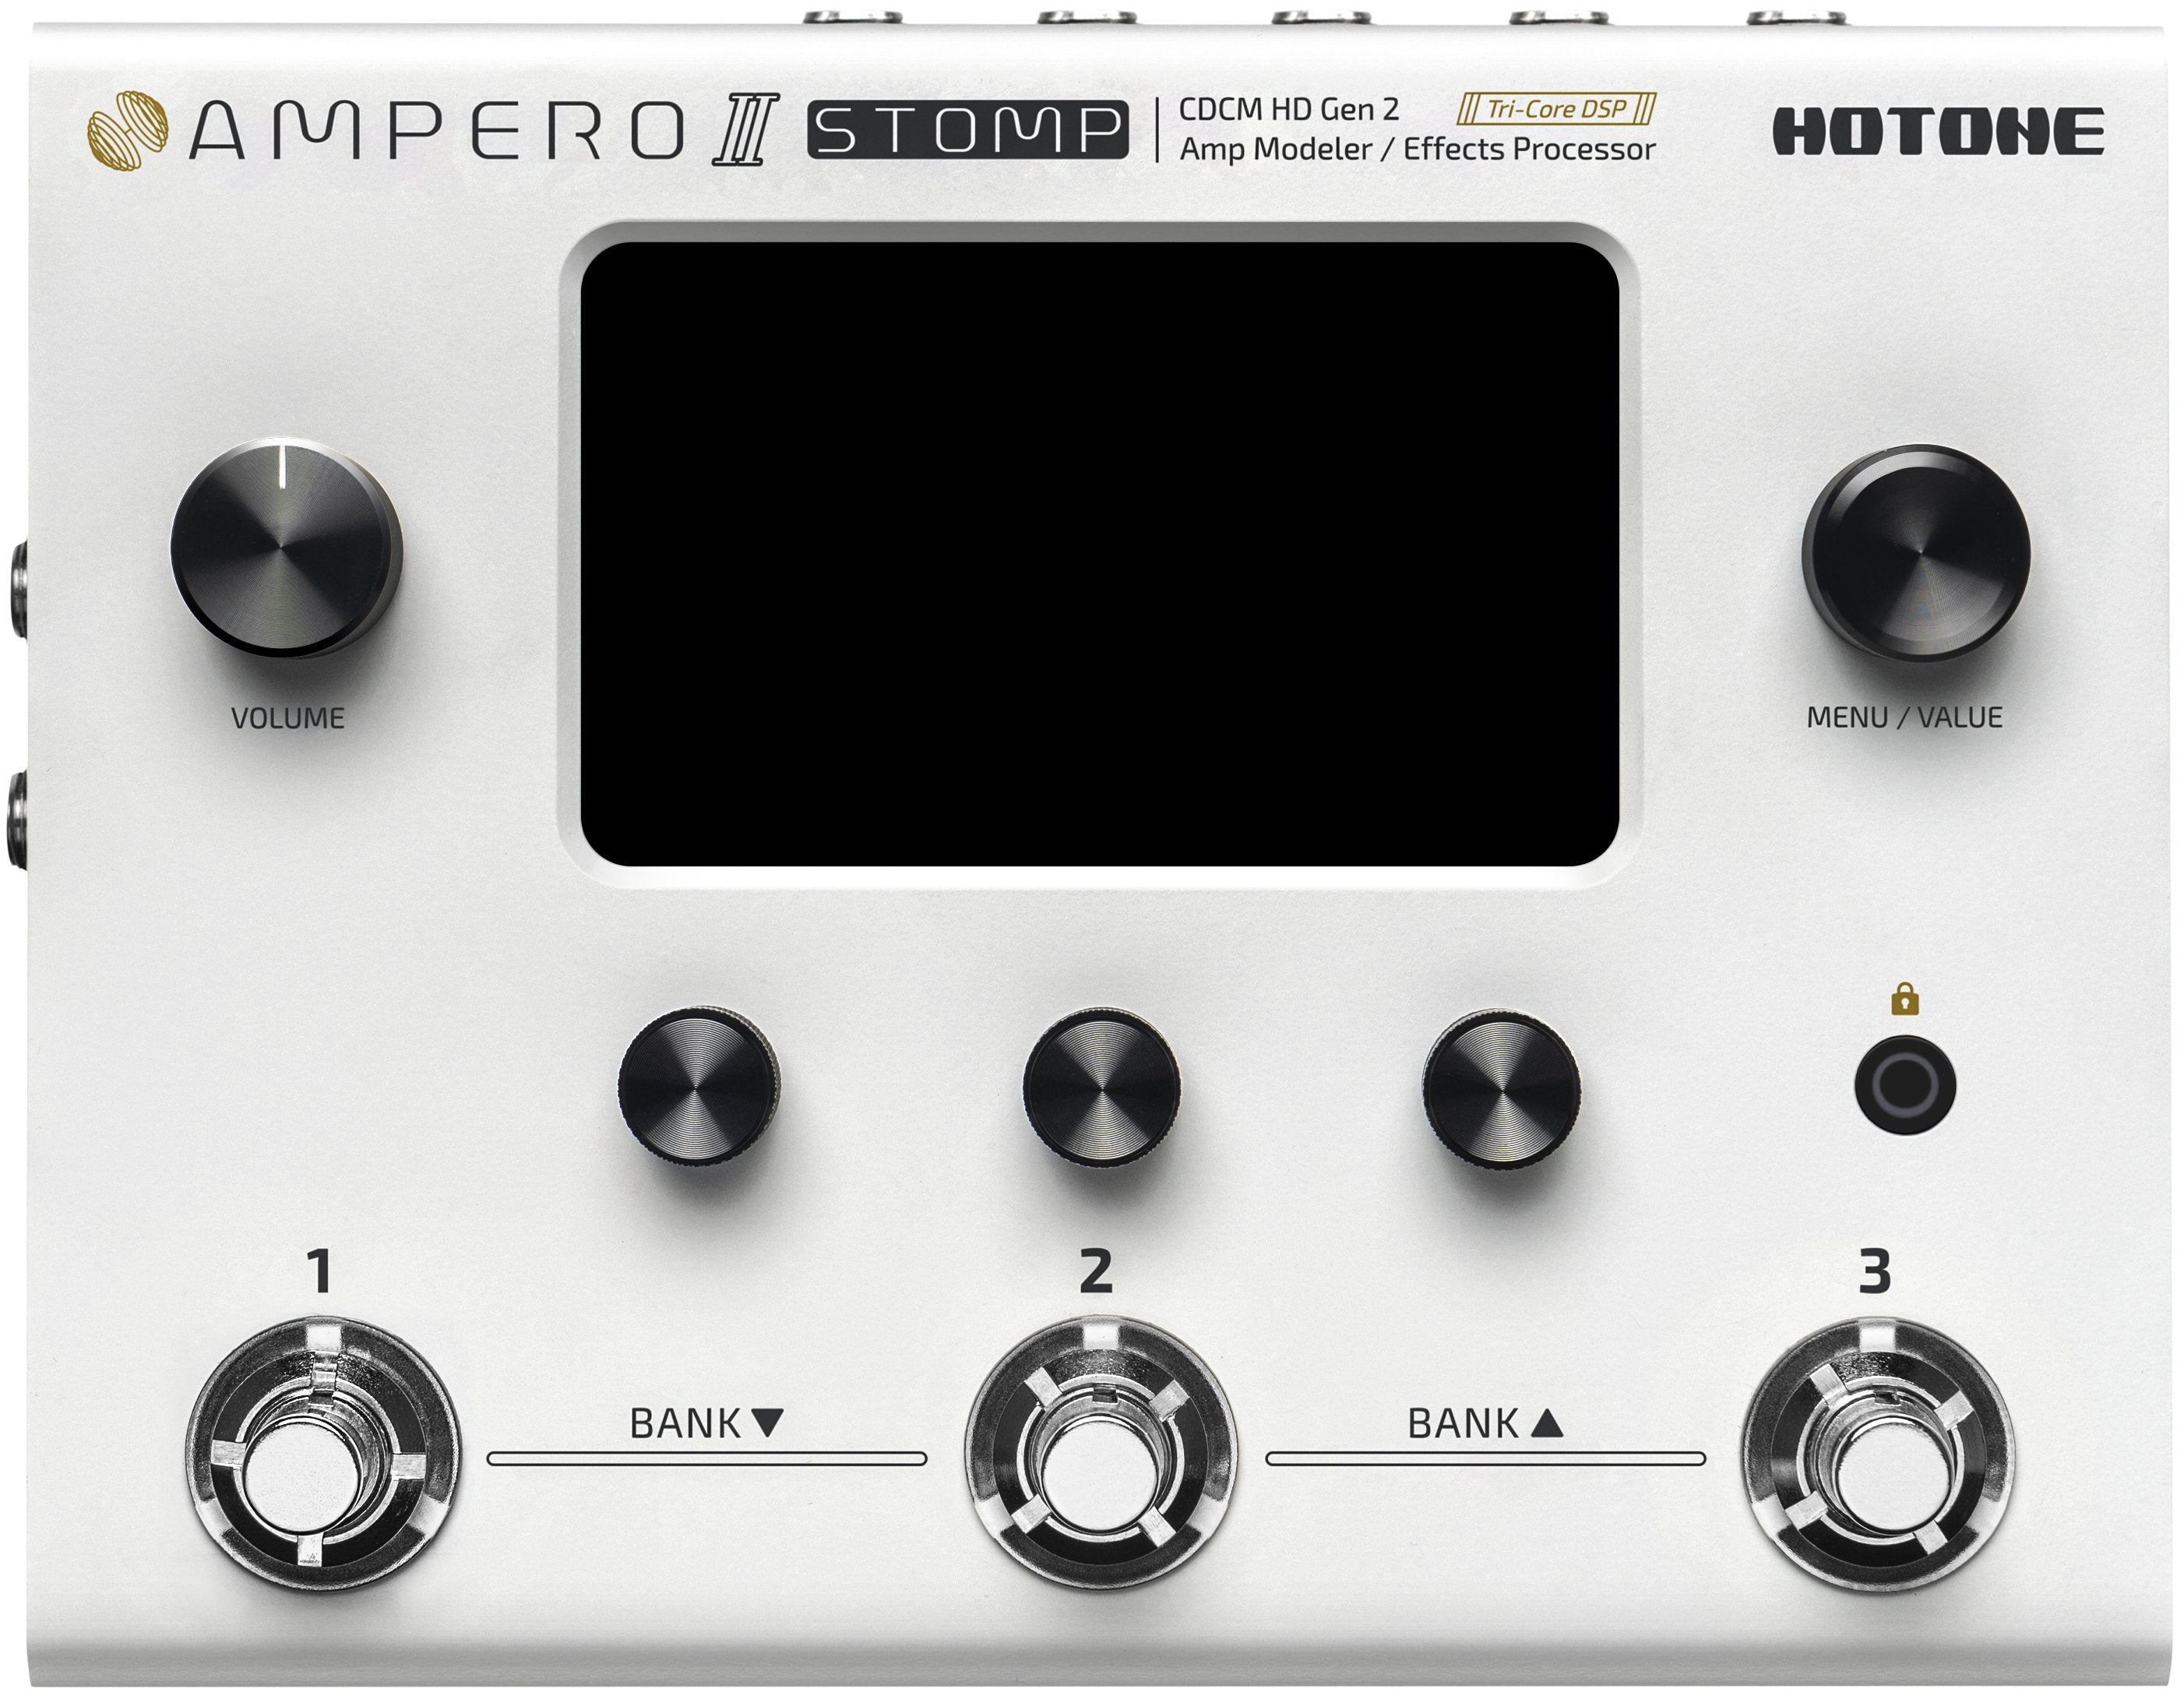 Ampero II Stomp CDCM HD Gen 2 Amp Modeler/Effects Processor